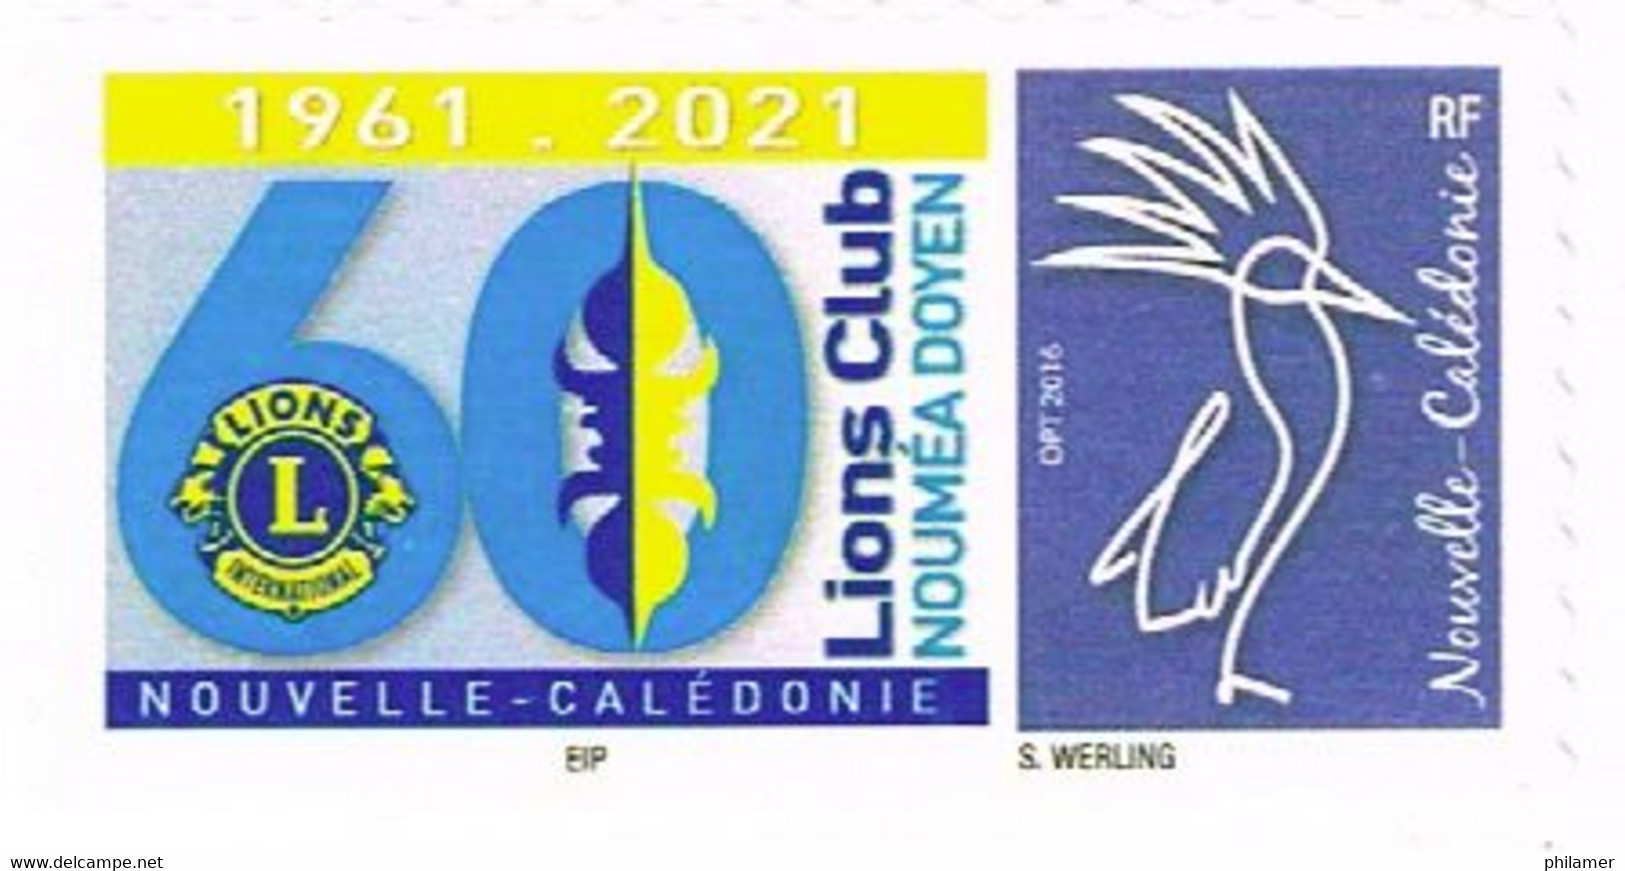 Nouvelle Caledonie Caledonia Timbre Personnalise A Moi Autocollant Prive Lions Club Noumea Doyen 2021 Unc IEP Sous CALED - Nuovi